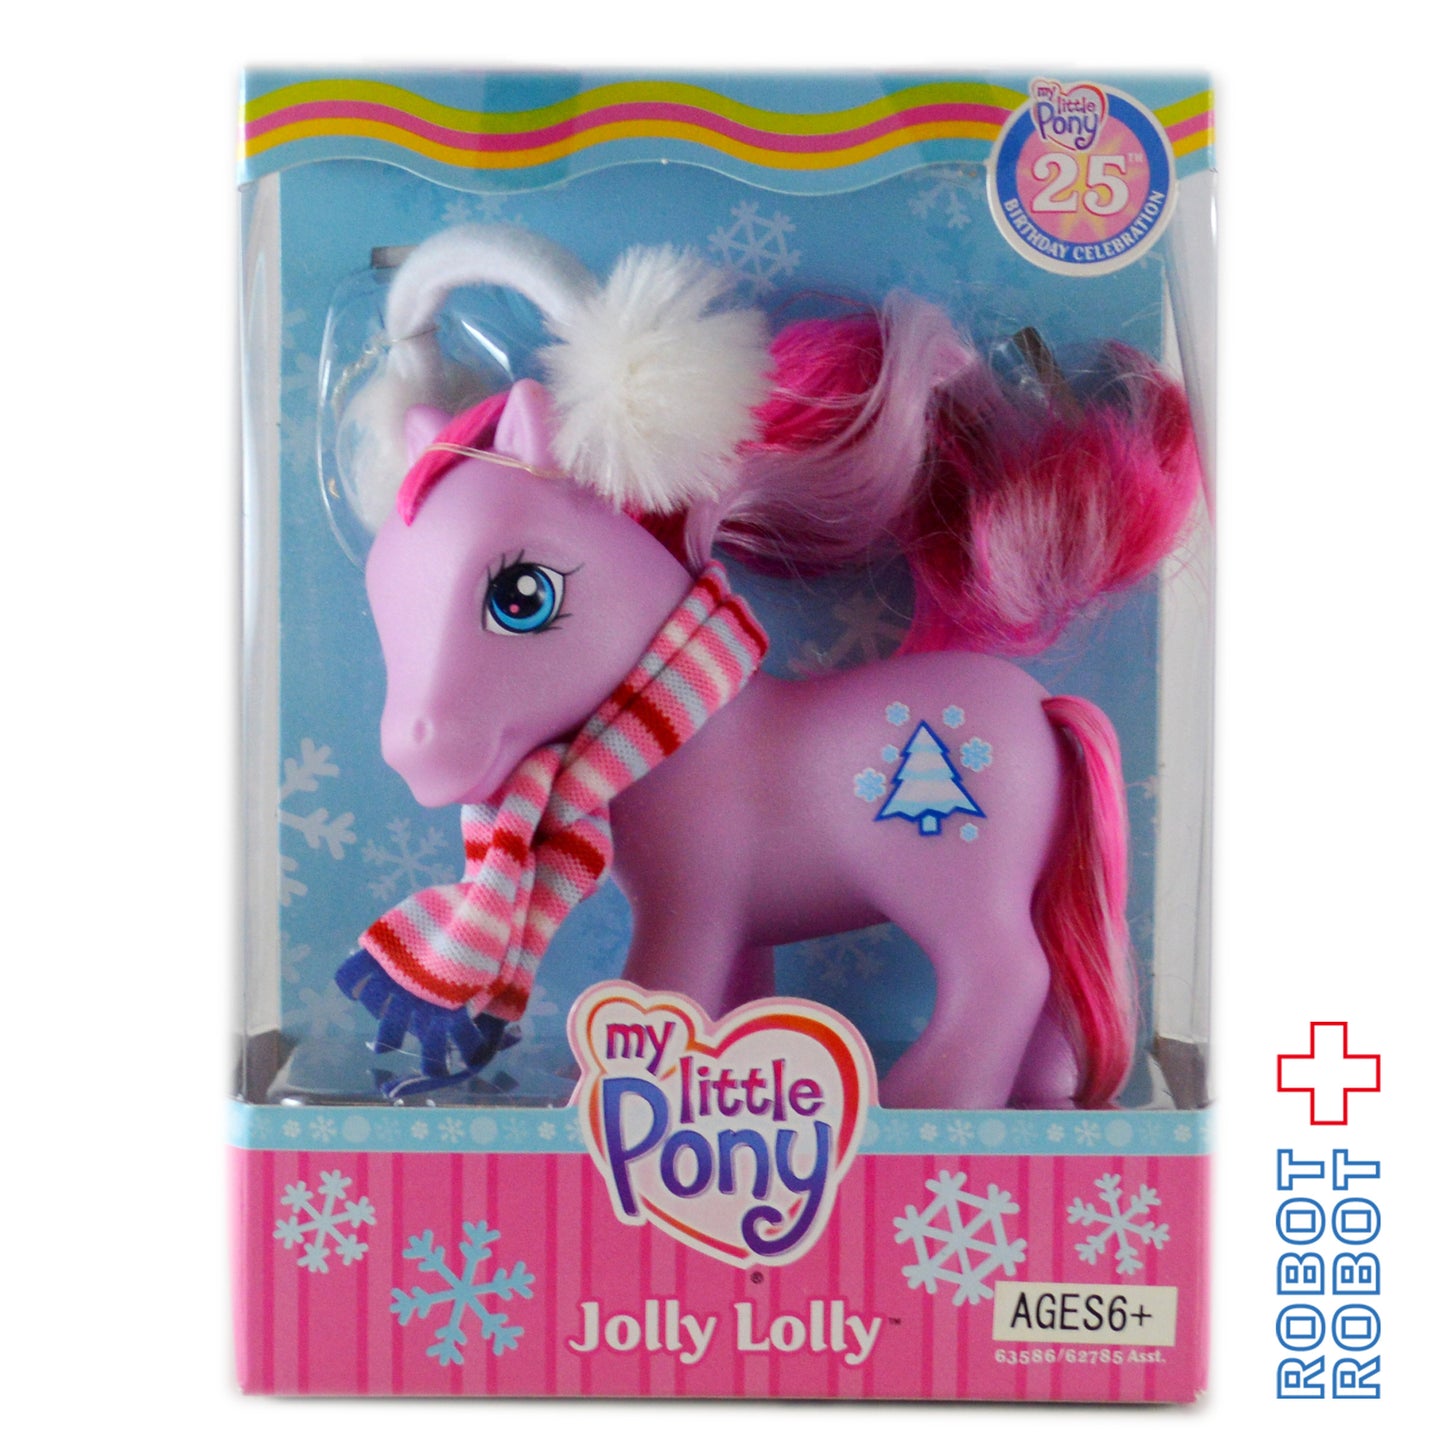 My Little Pony G3 25th Birthday Celebration JOLLY LOLLY